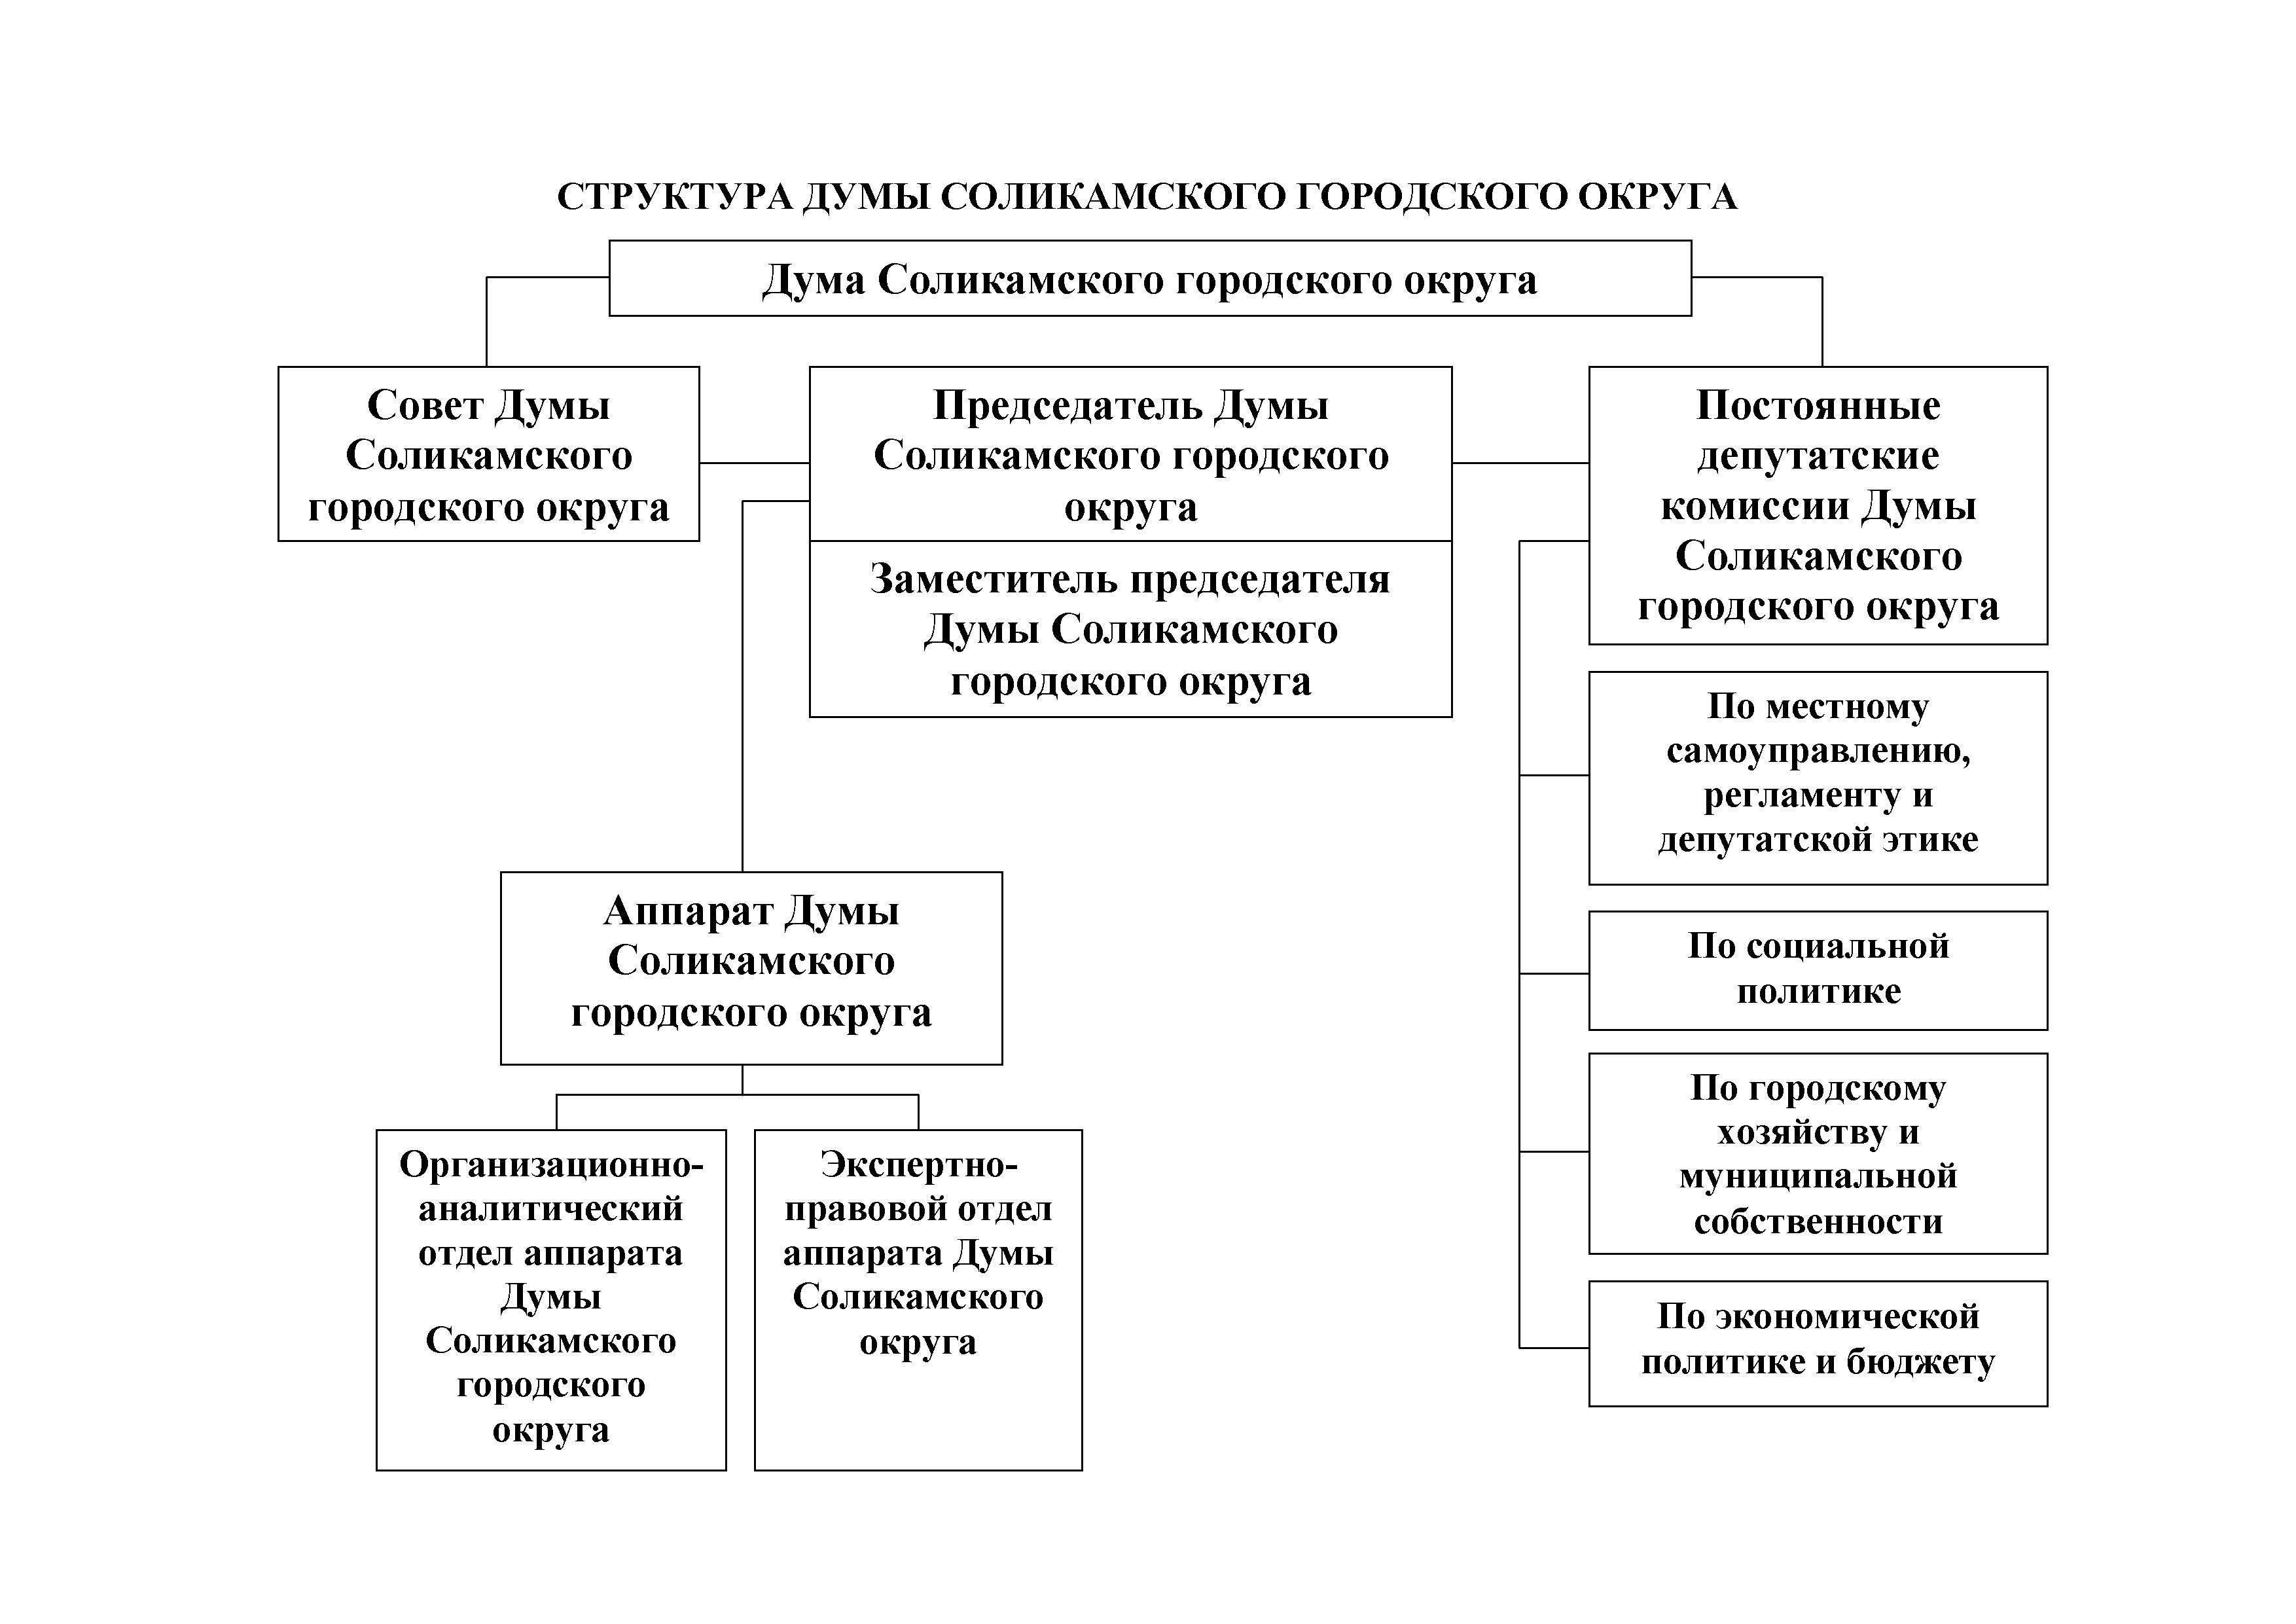 Структура правительства края